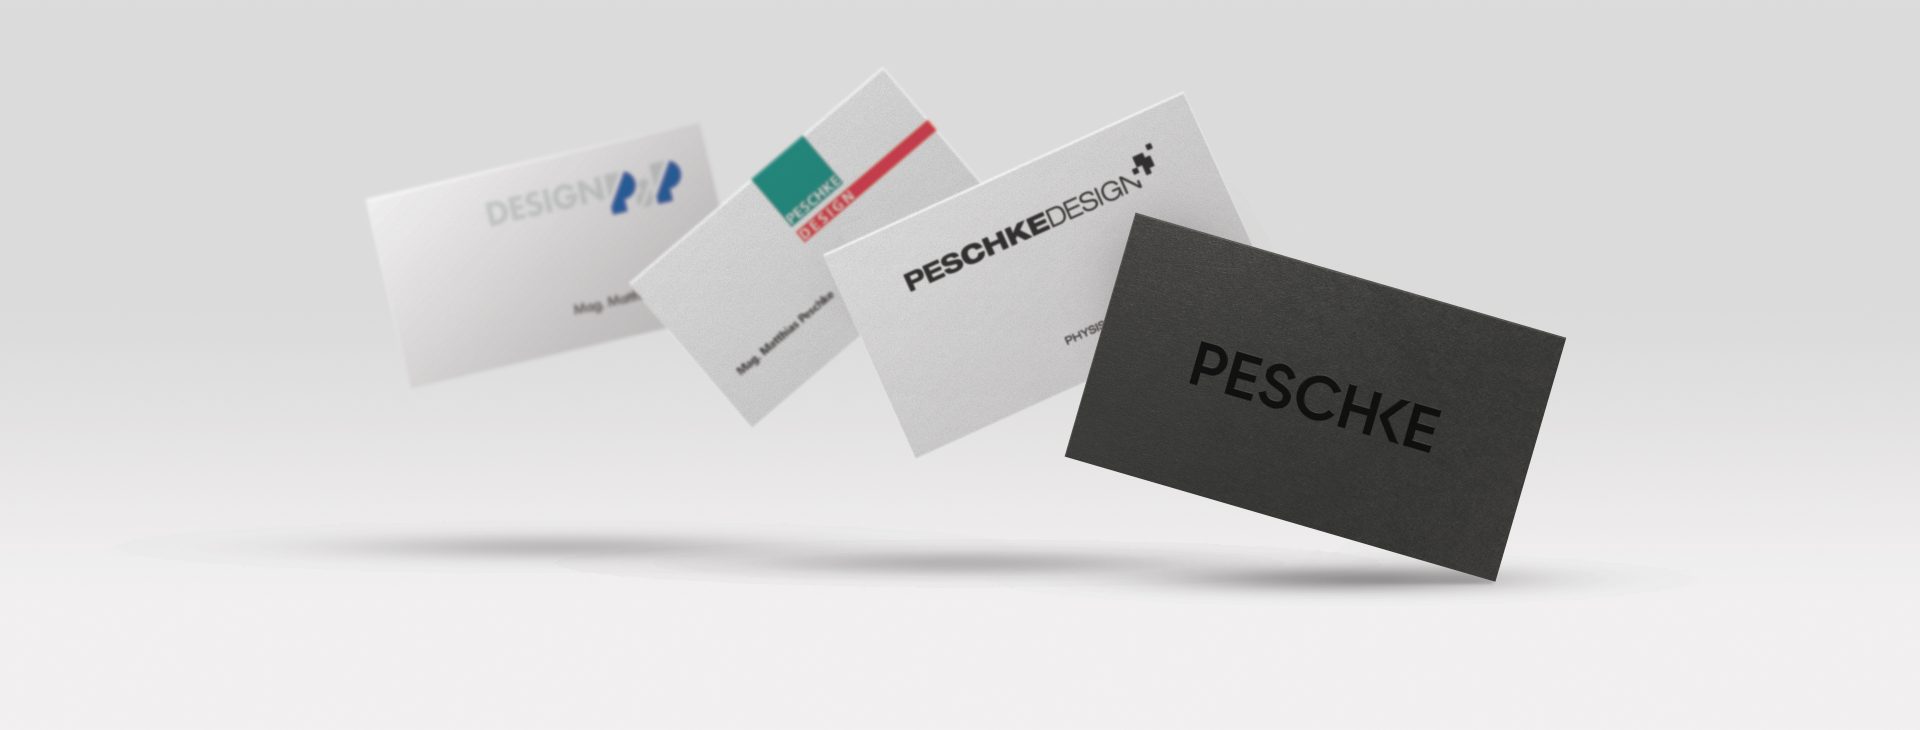 Peschke business card evolution over time